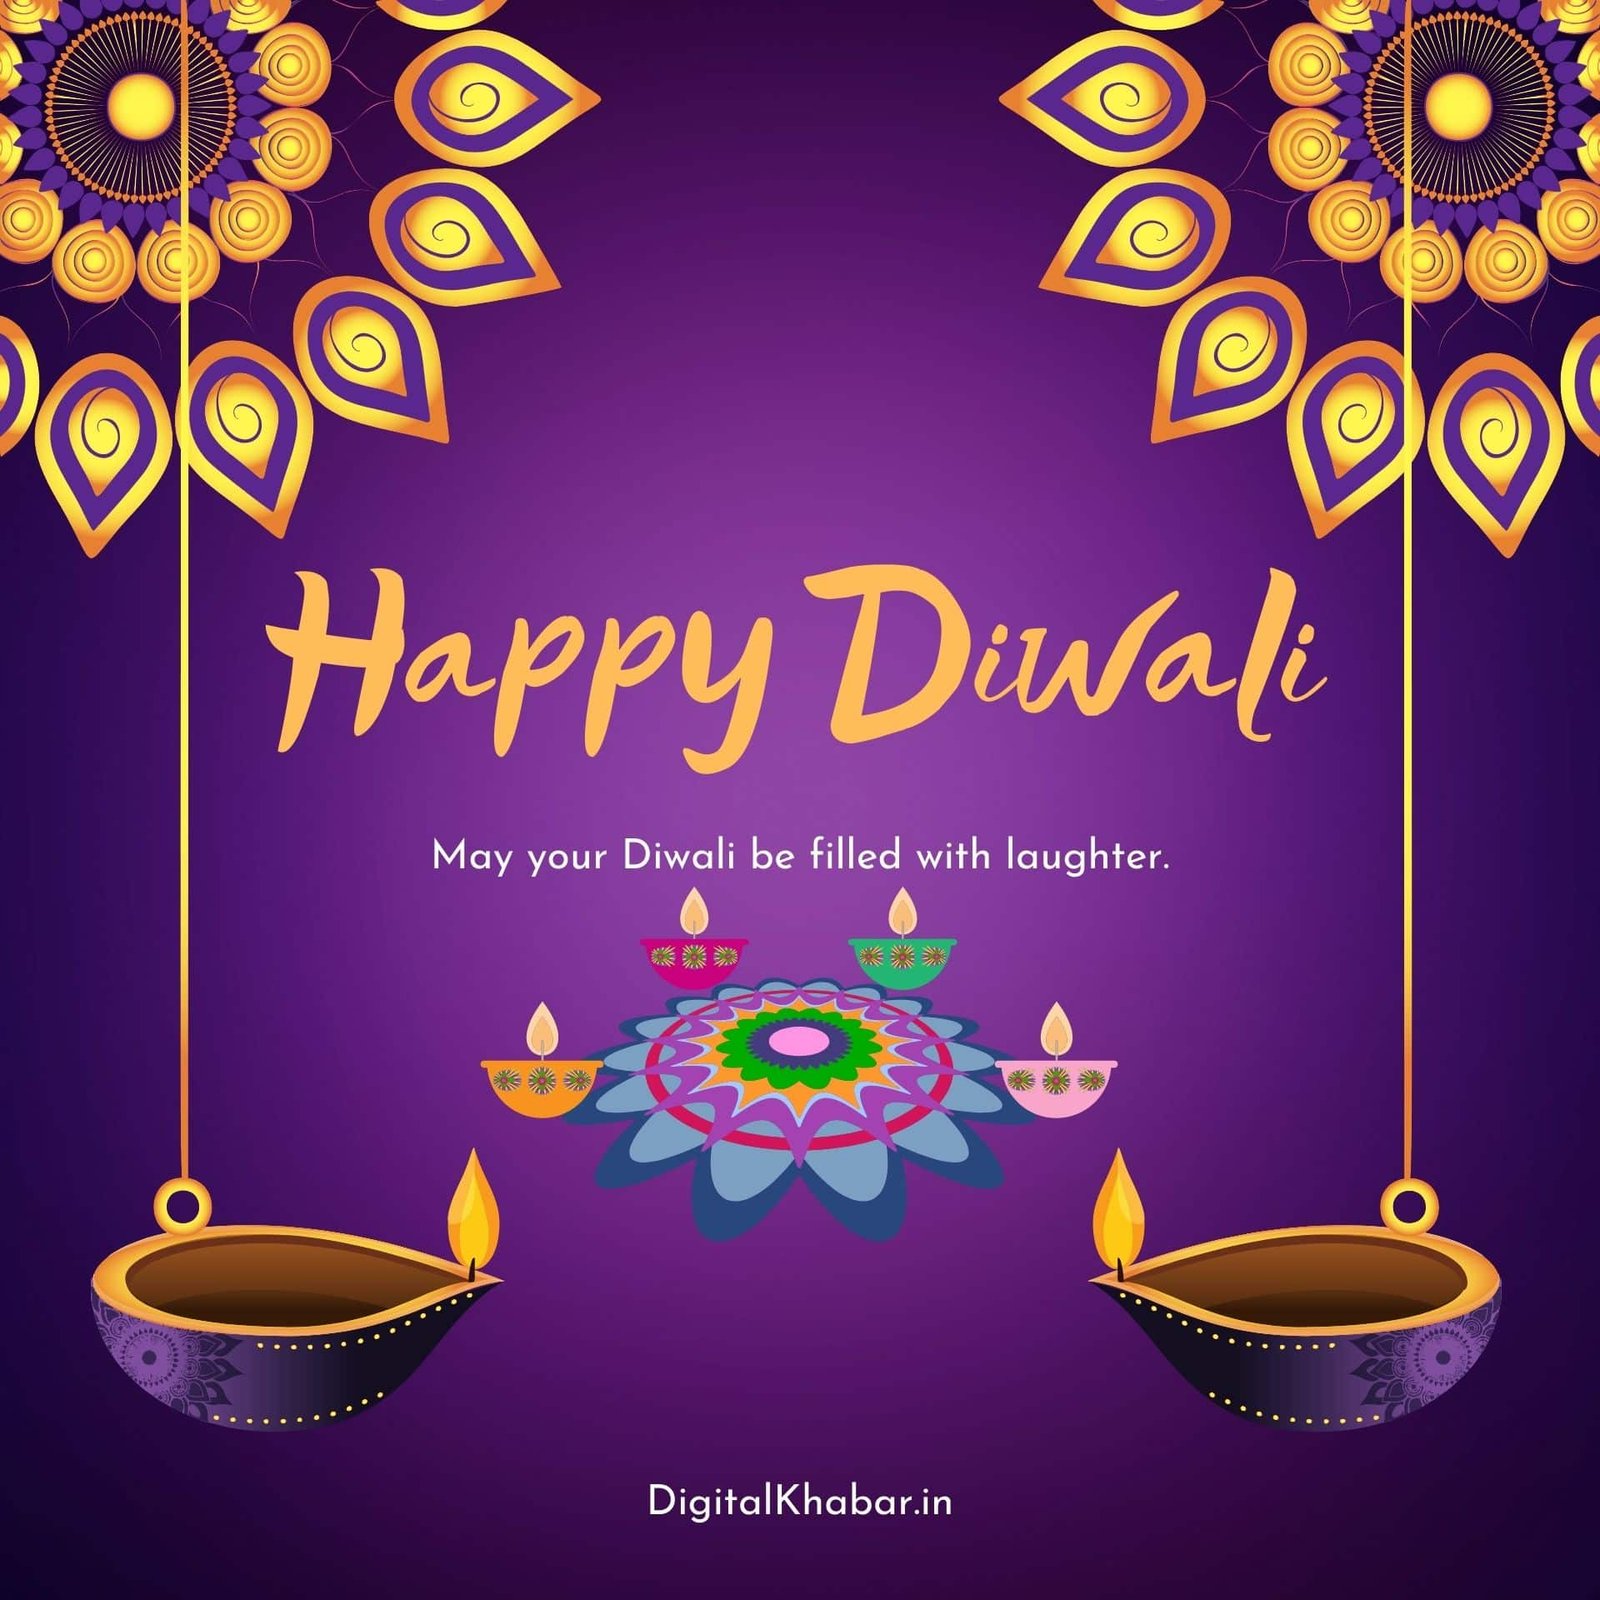 Share Wallpaper Hd Happy Diwali Best Songngunhatanh Edu Vn